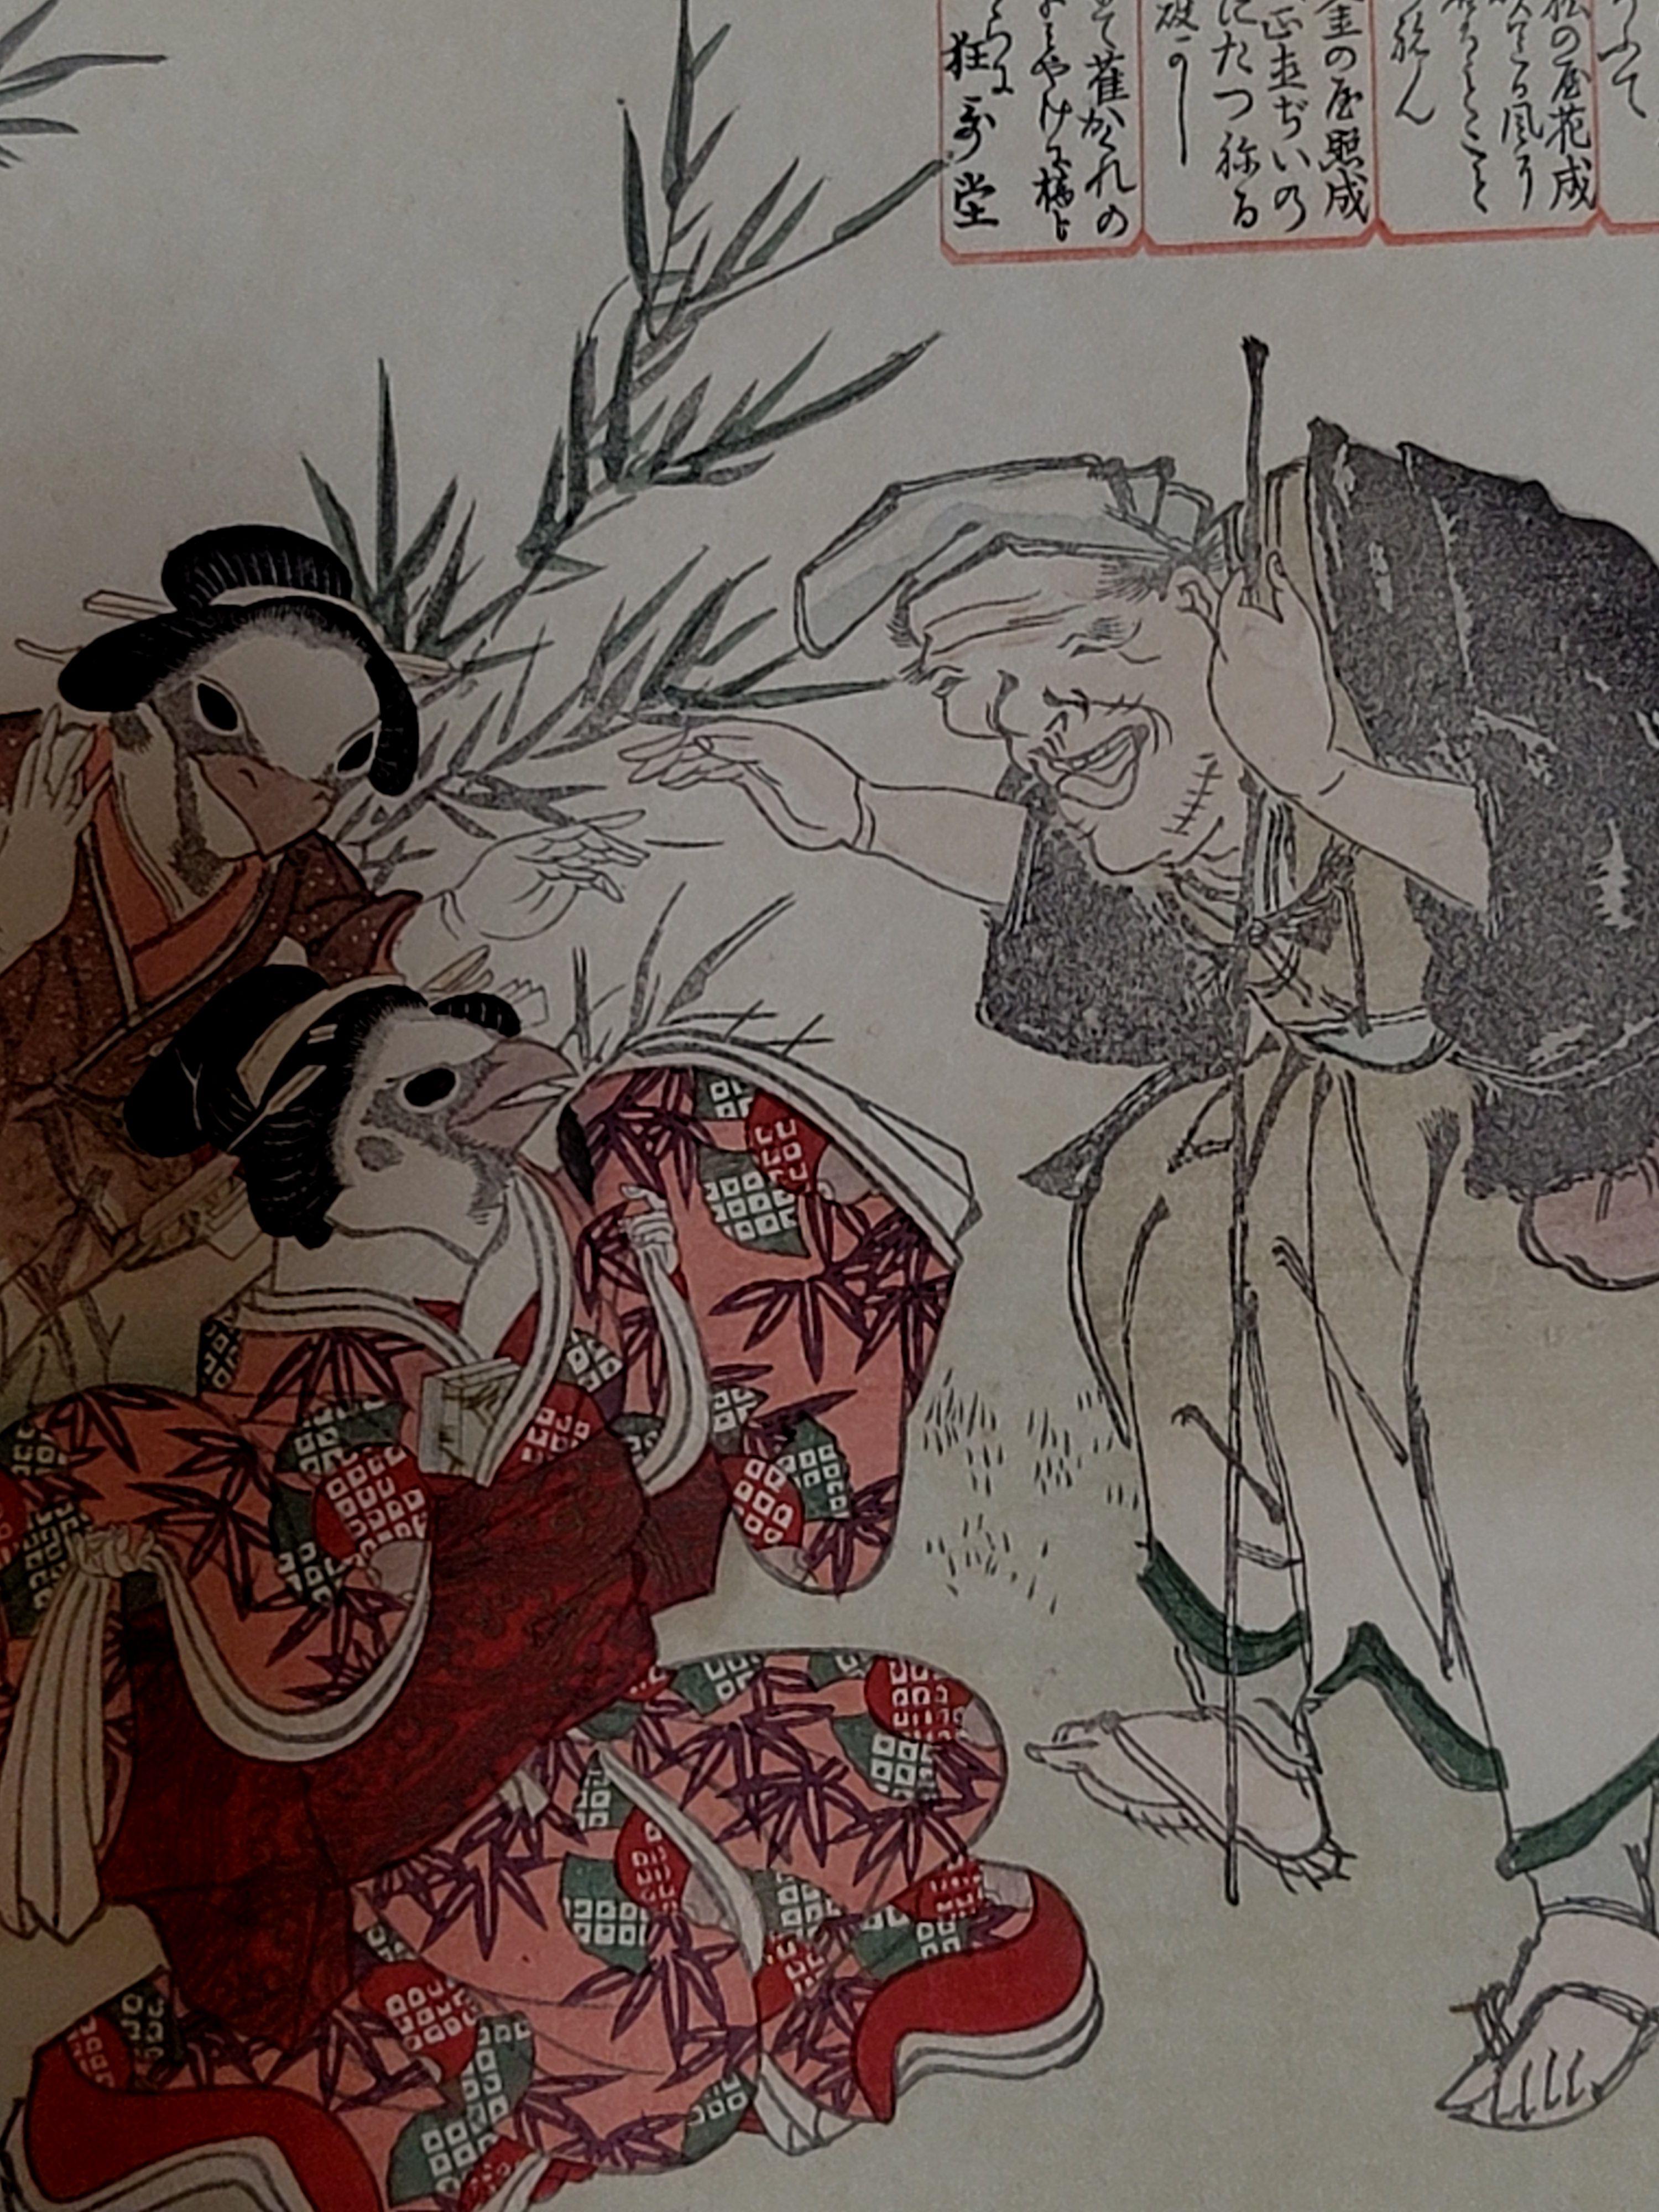 Japanischer Farbholzschnitt von Eizan Kikugawa,???? (1787~1867)

ÜBER DEN KÜNSTLER

Der aus Edo stammende Eizan Kikugawa wurde 1787 als Toshinobu Omiya geboren. Er begann seine künstlerische Laufbahn bei seinem Vater Eiji Kikugawa, einem Maler